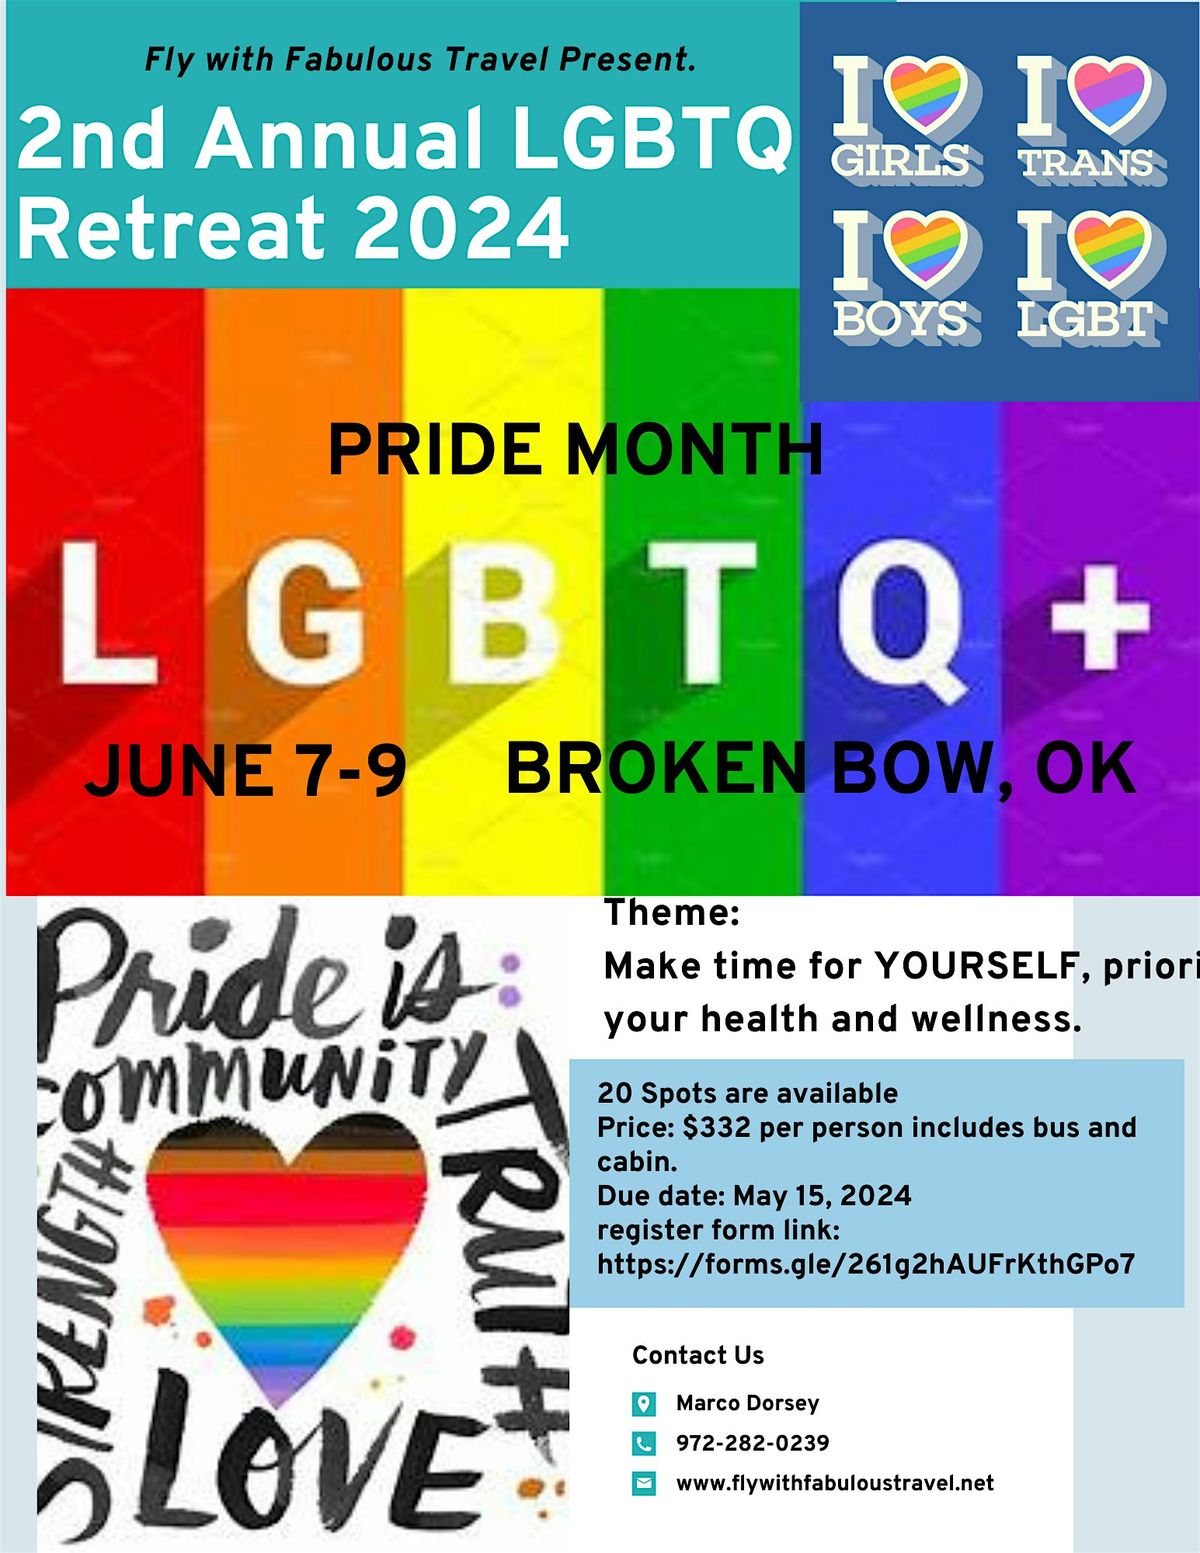 The 2nd Annual LGBTQ Pride Retreat 2024